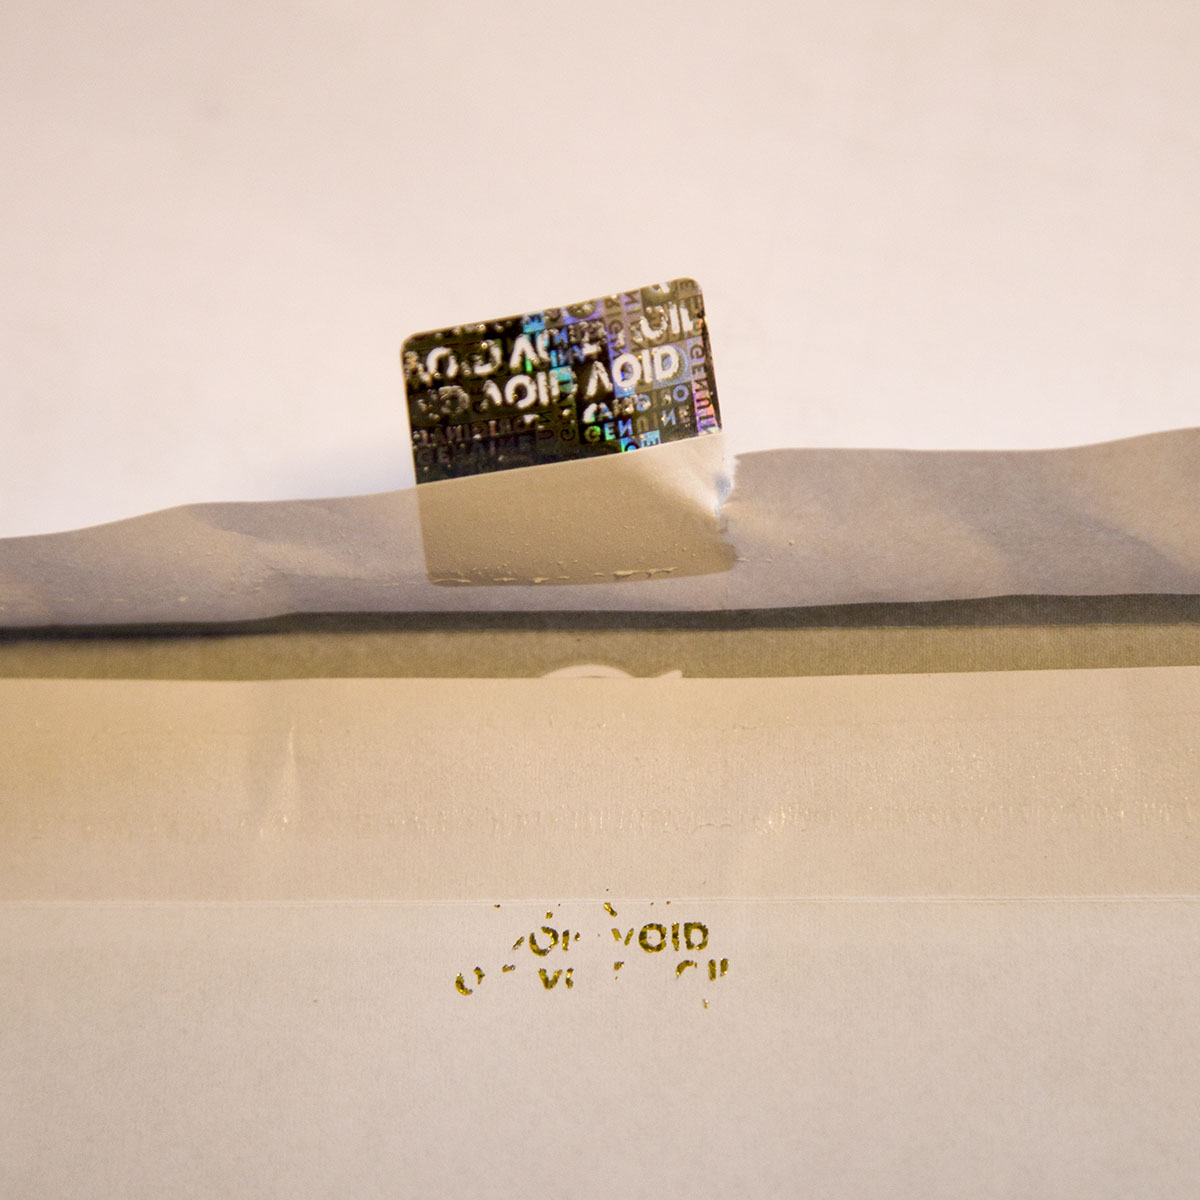 (groß bis 1600 mm²) Personalisierter 3D Hologramm Sticker/Siegel